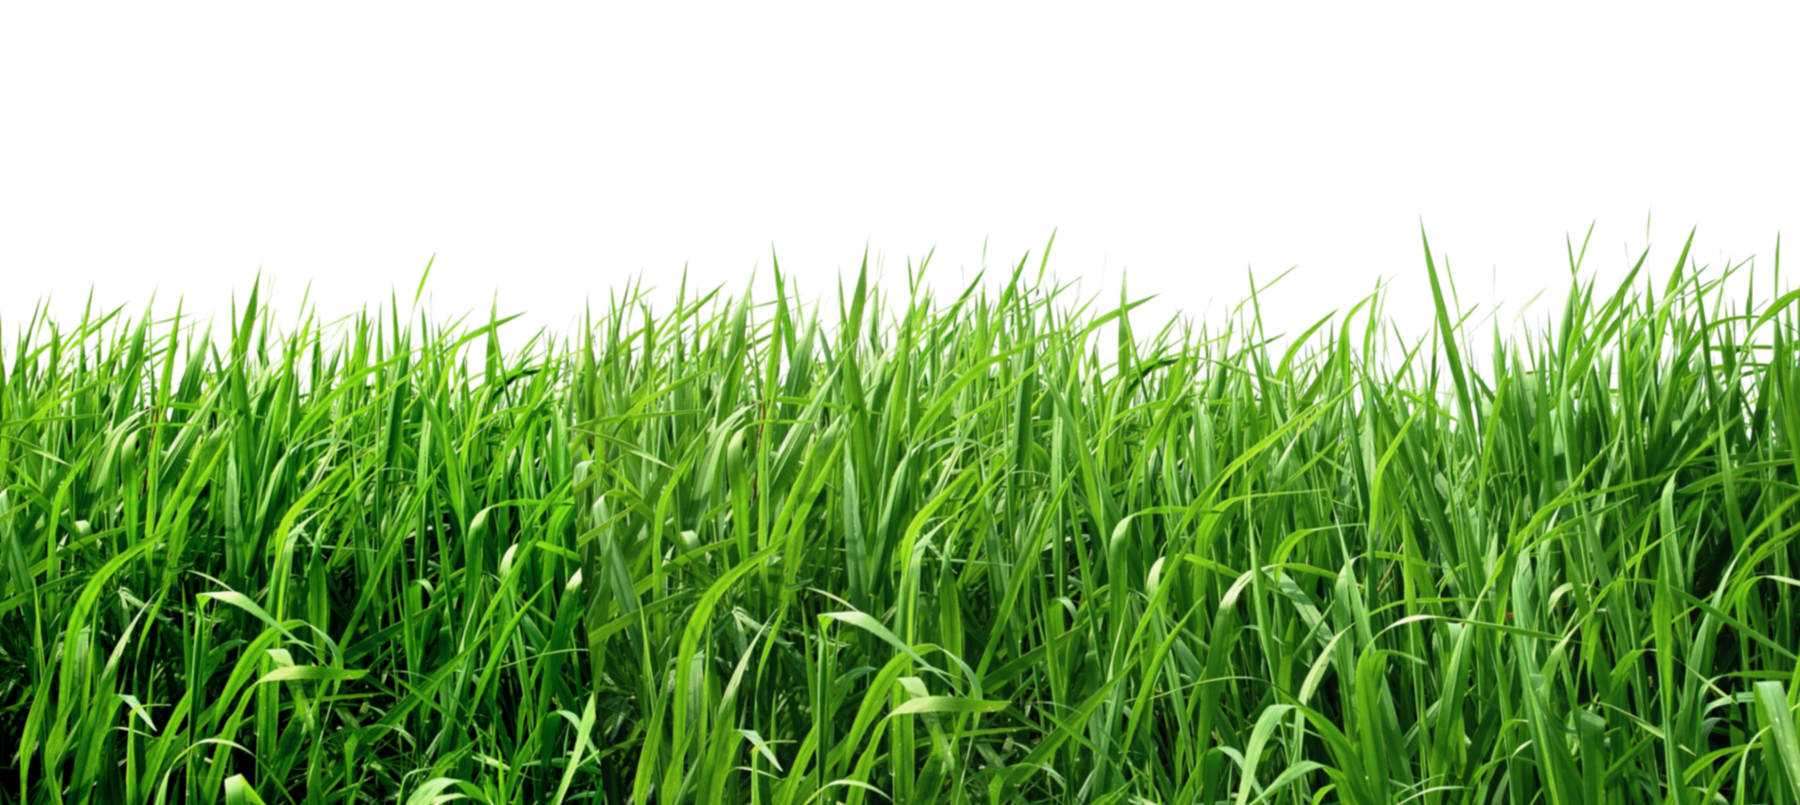 grass png transparent image #9229